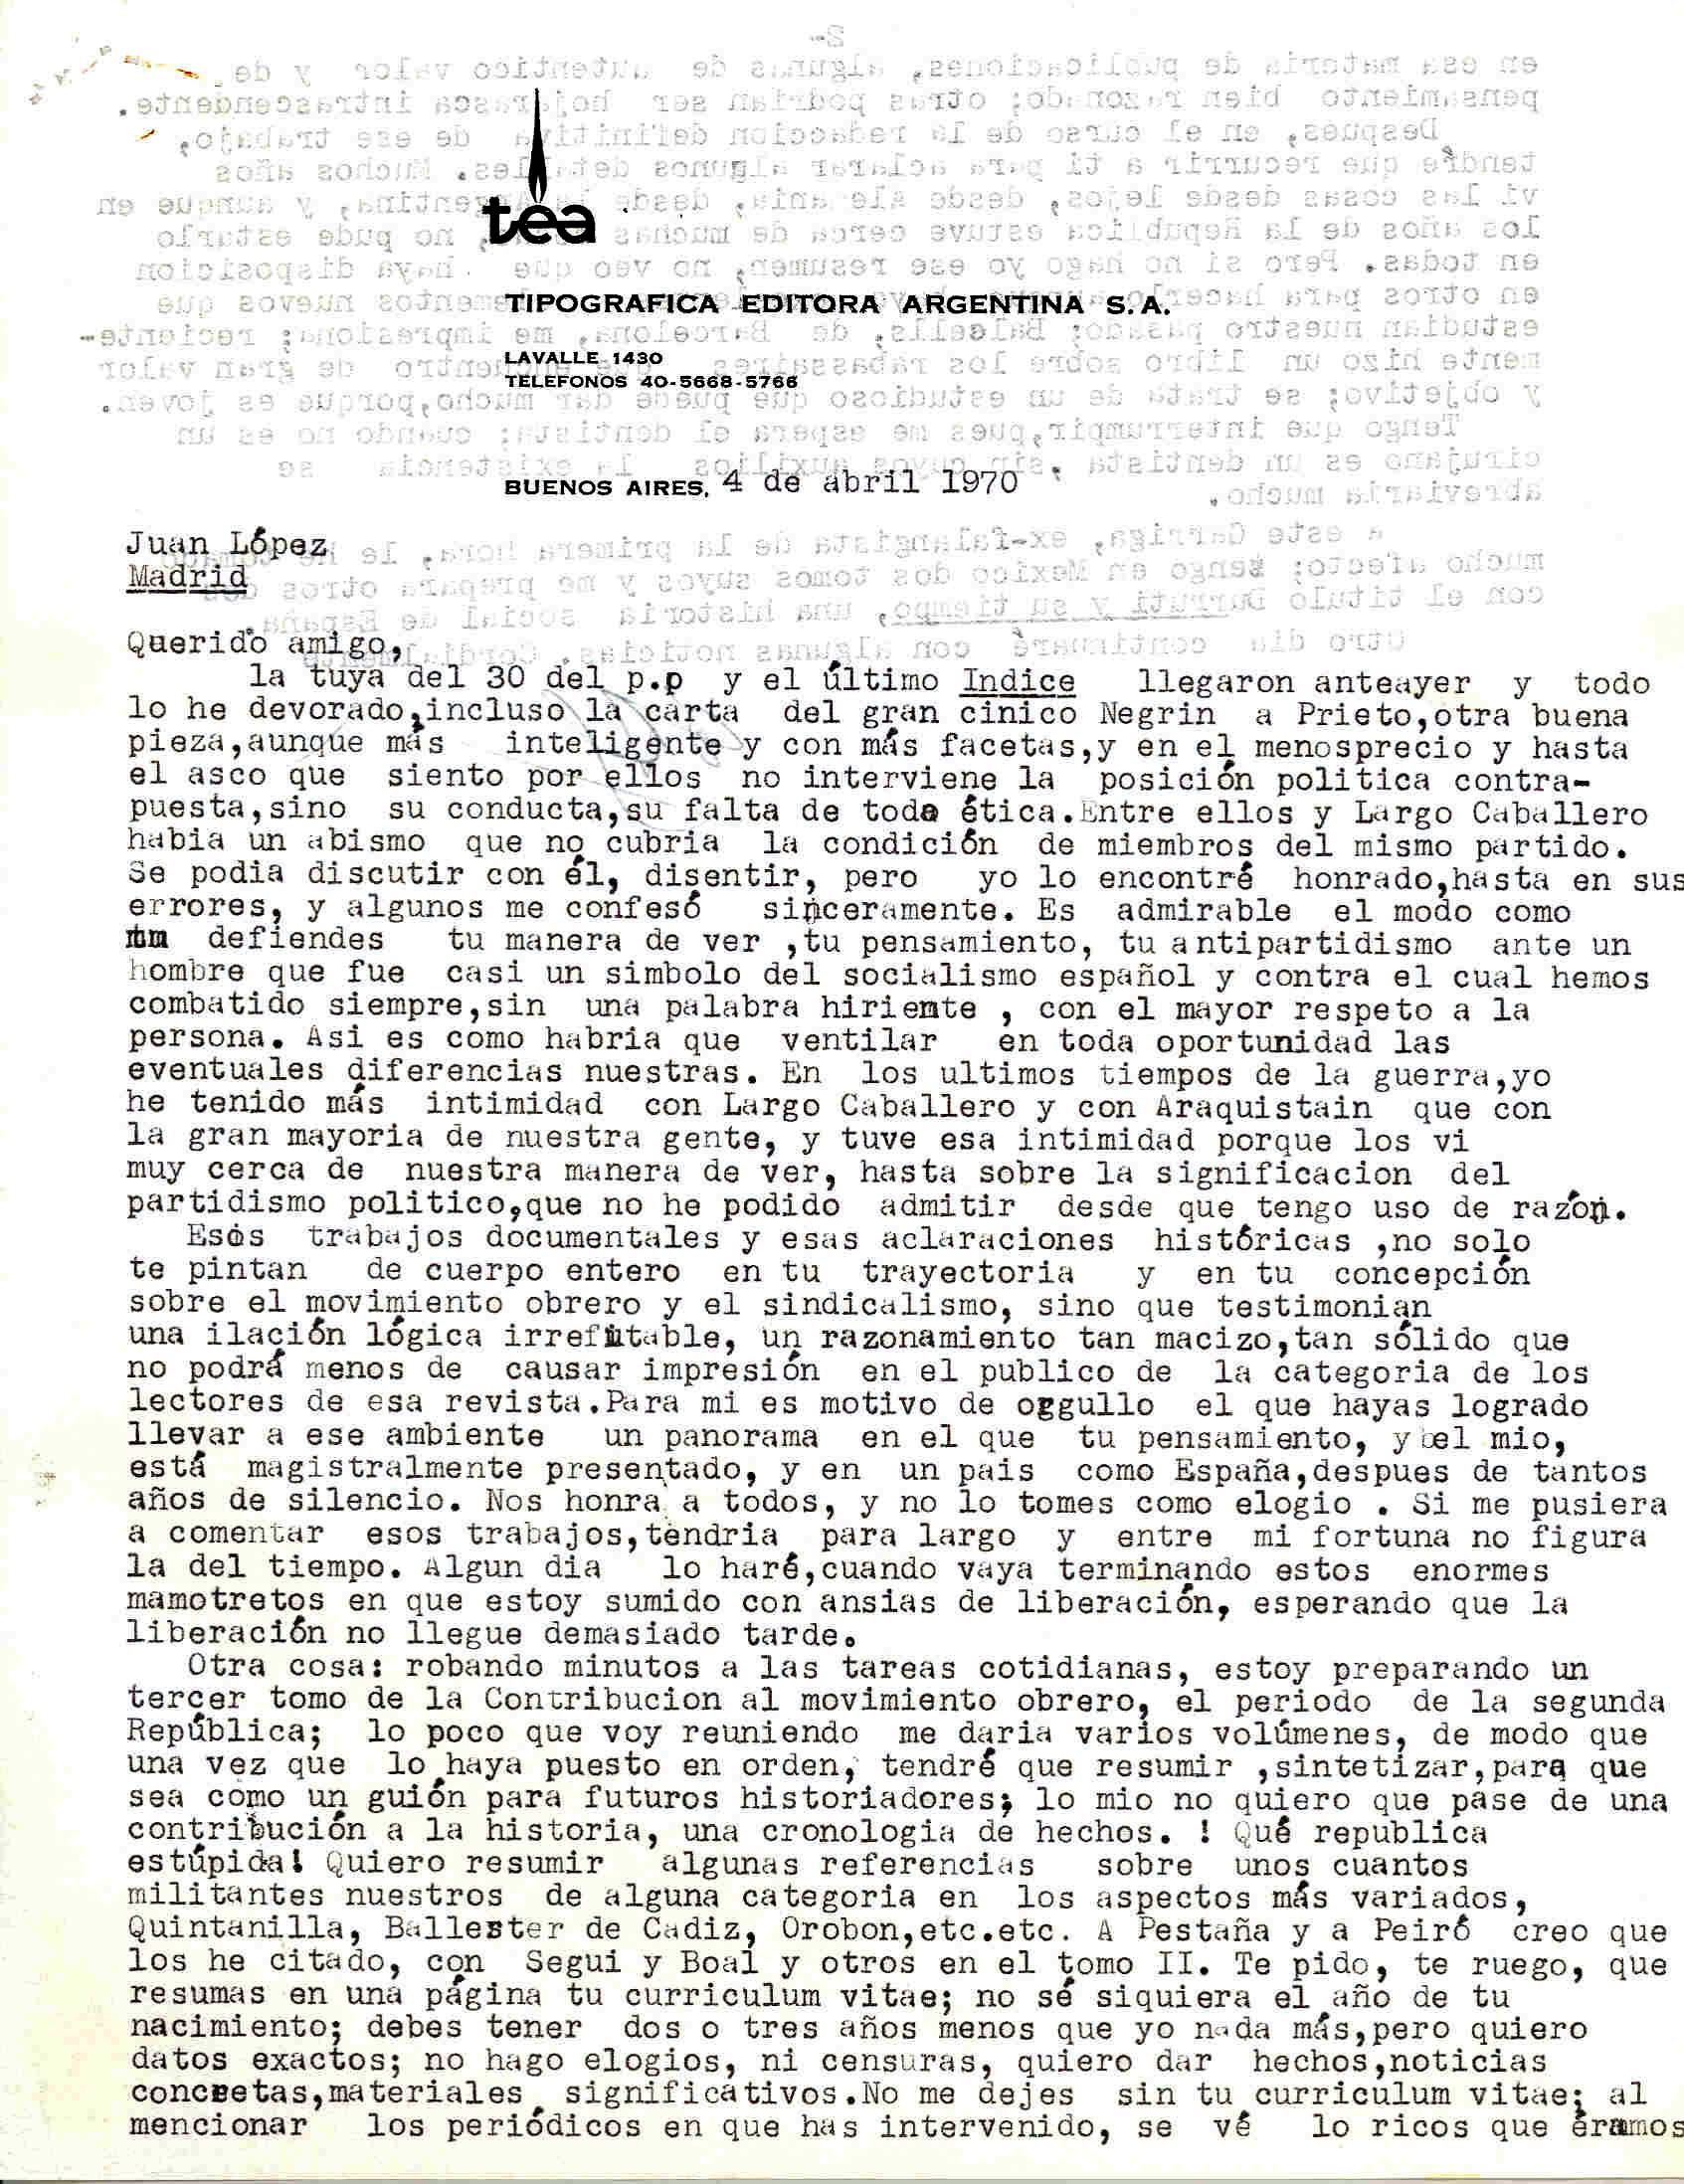 Carta de Diego Abad de Santillán sobre Largo Caballero y la preparación del tercer T. de la Contribución al movimiento obrero